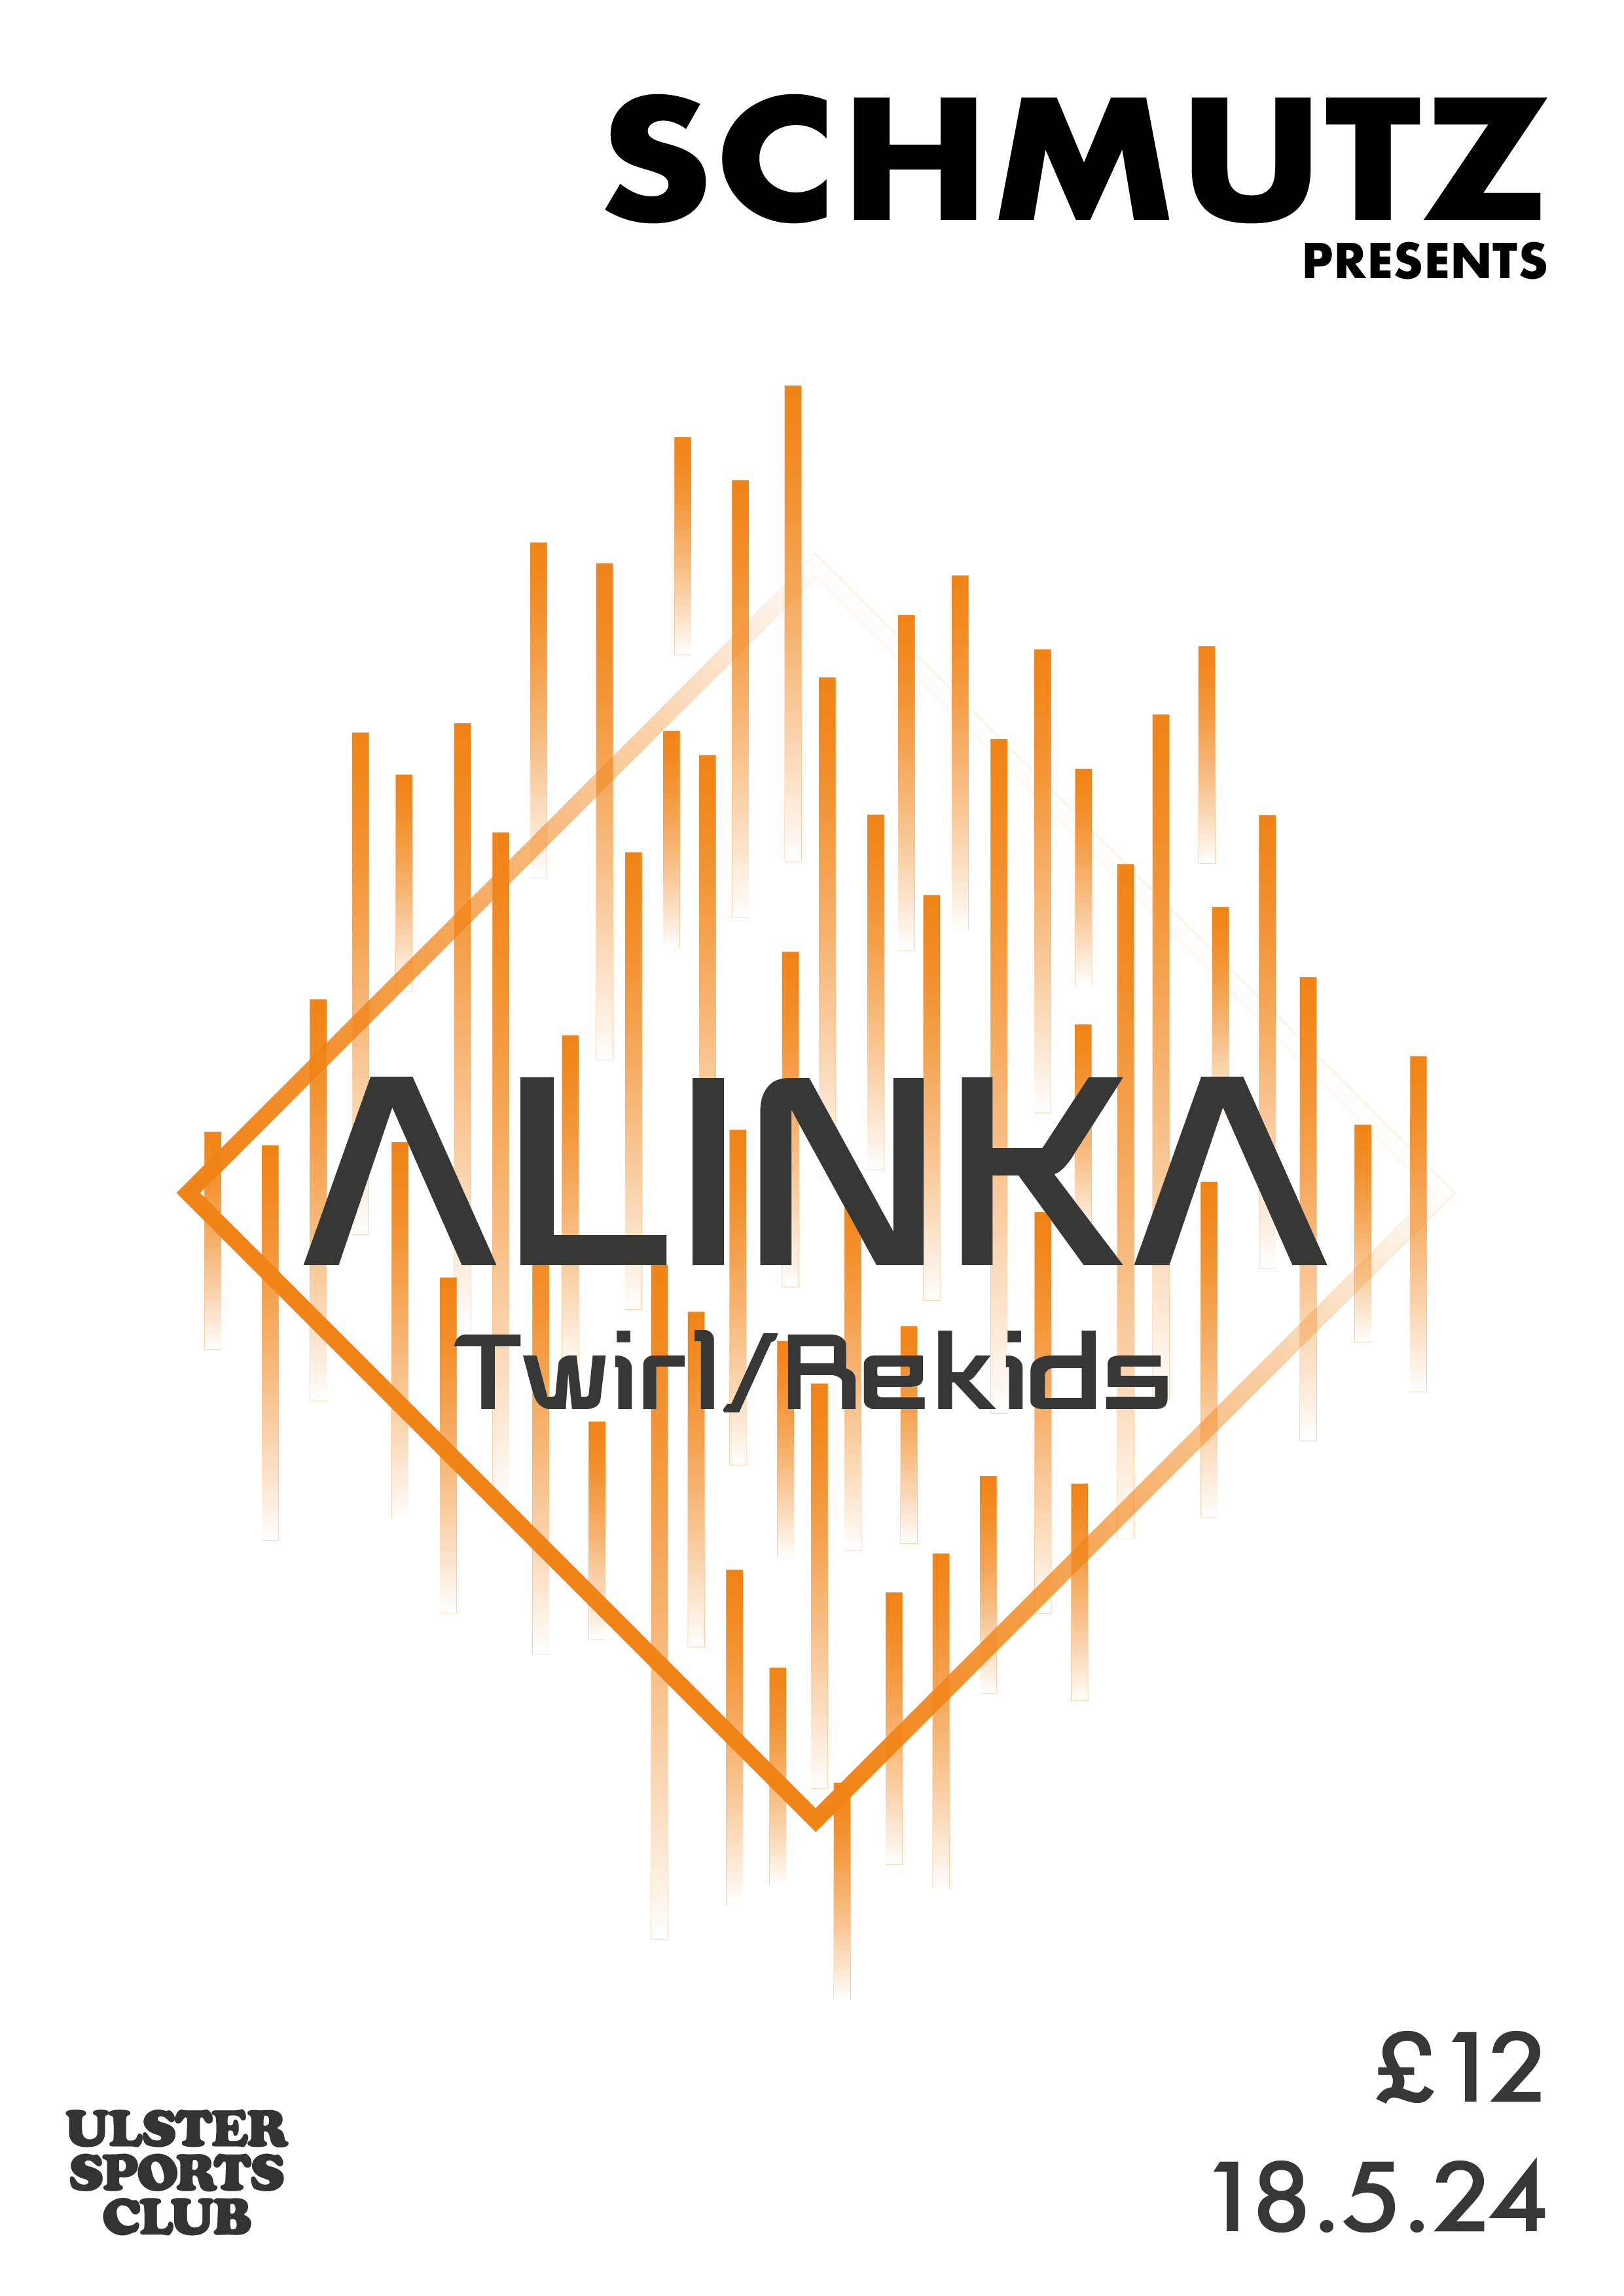 Schmutz Presents Alinka (Rekids/Twirl) - フライヤー表